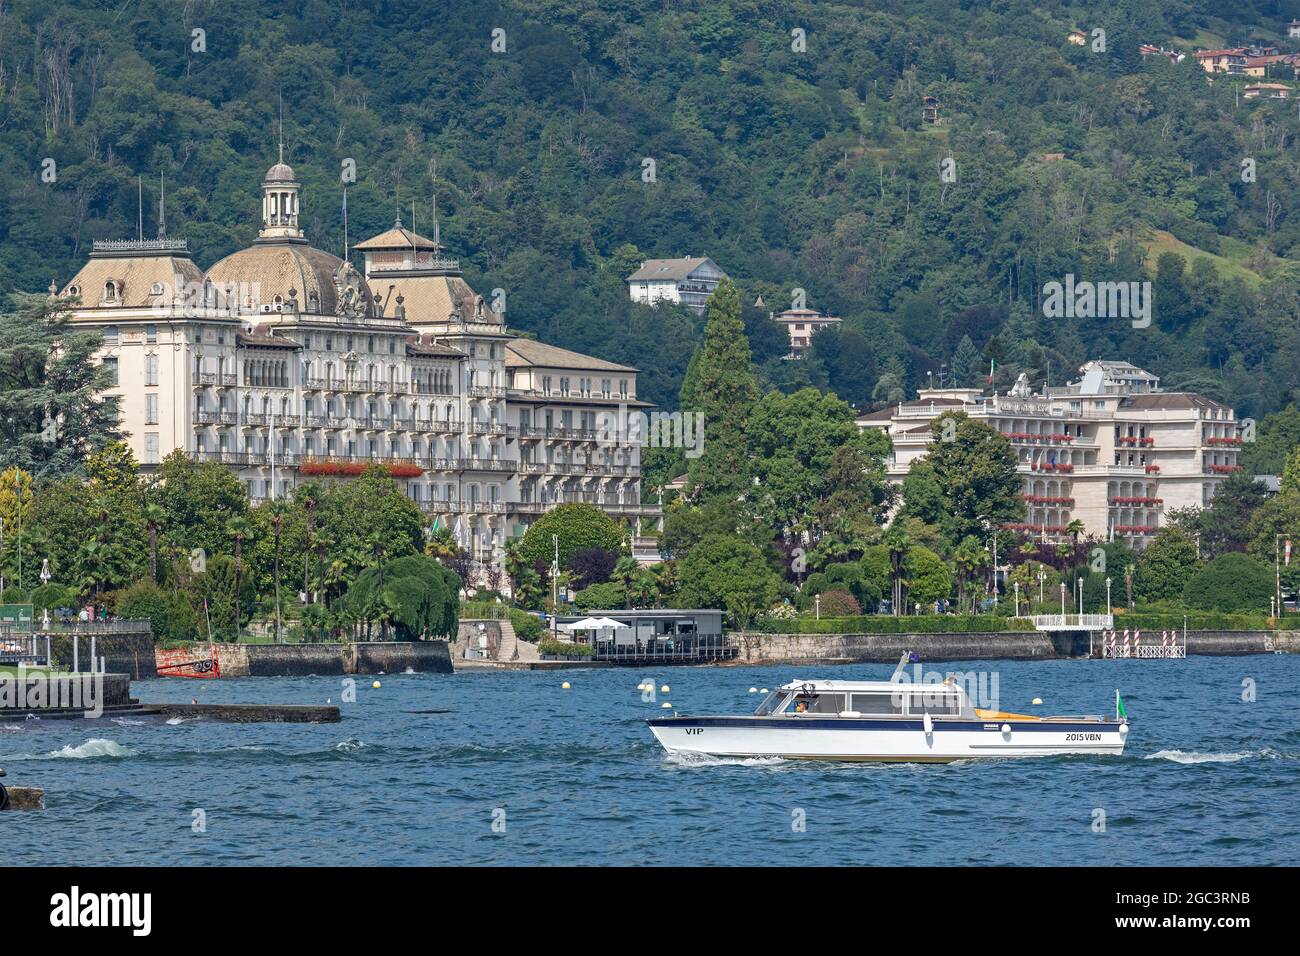 Grand Hotel des Iles Borromees, Stresa, Lake Maggiore, Piedmont, Italy Stock Photo